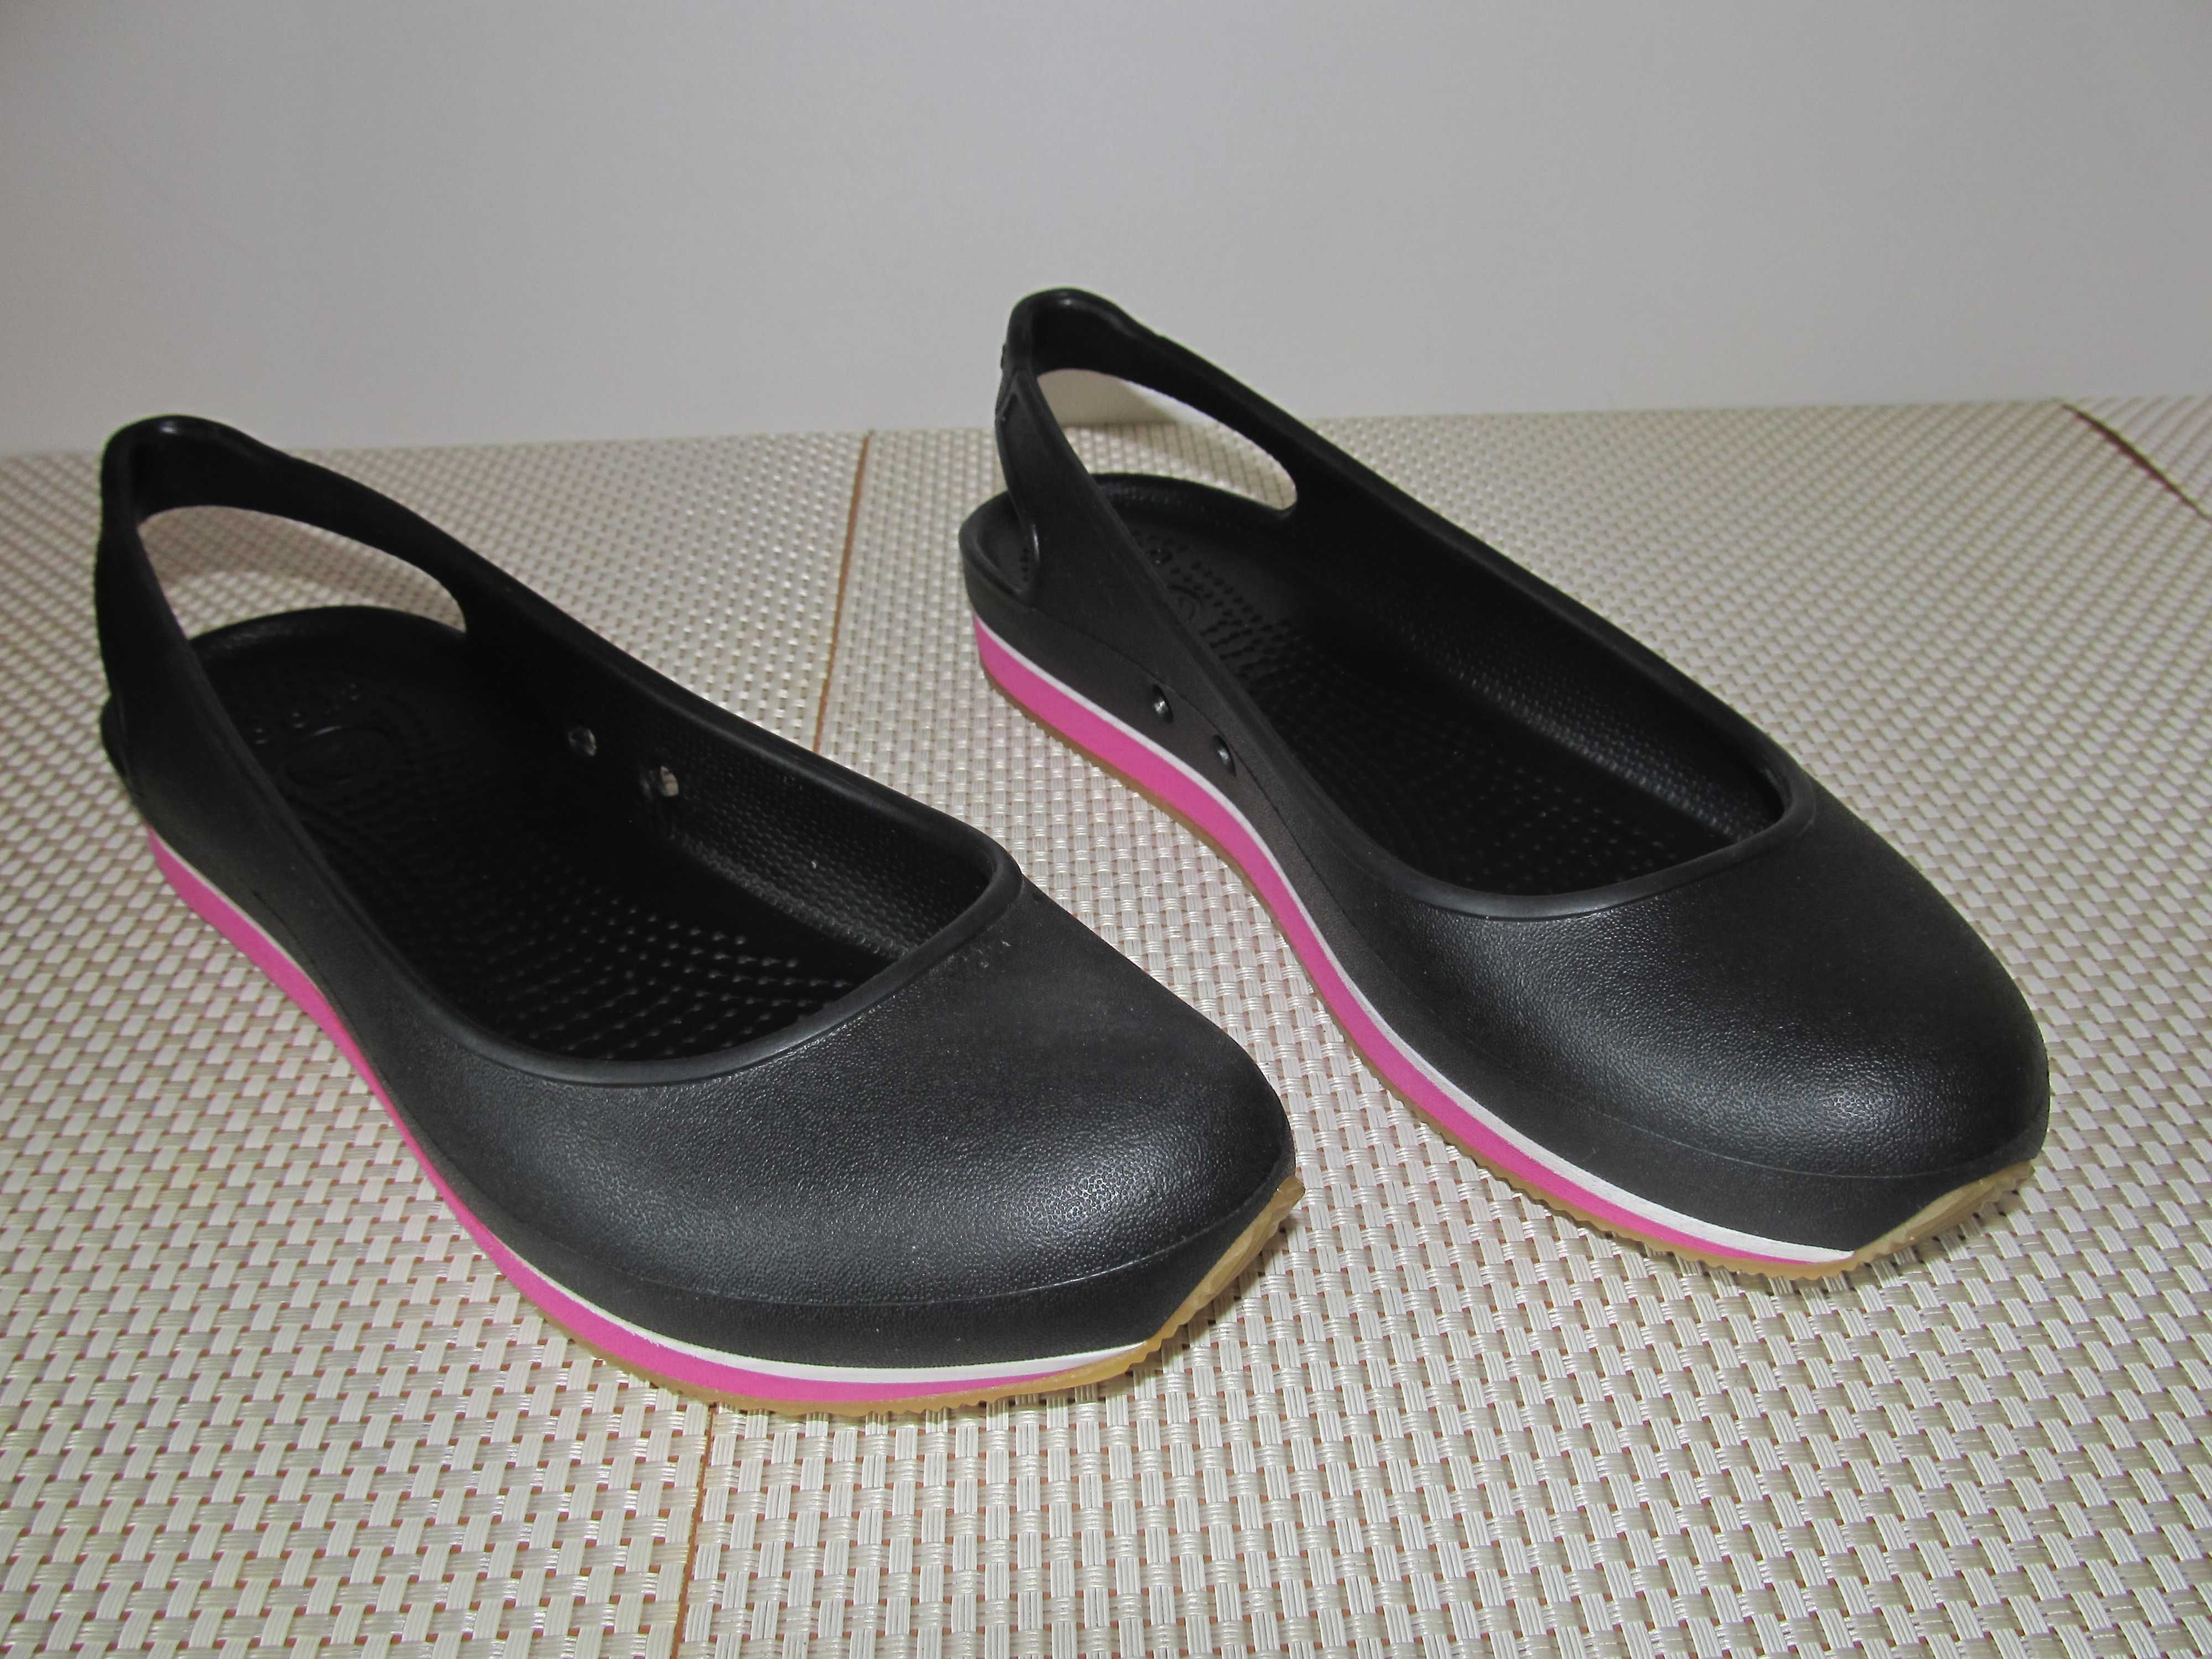 Жіночі пляжні туфлі Crocs Colorado. Крокси, тапки, взуття на пляж